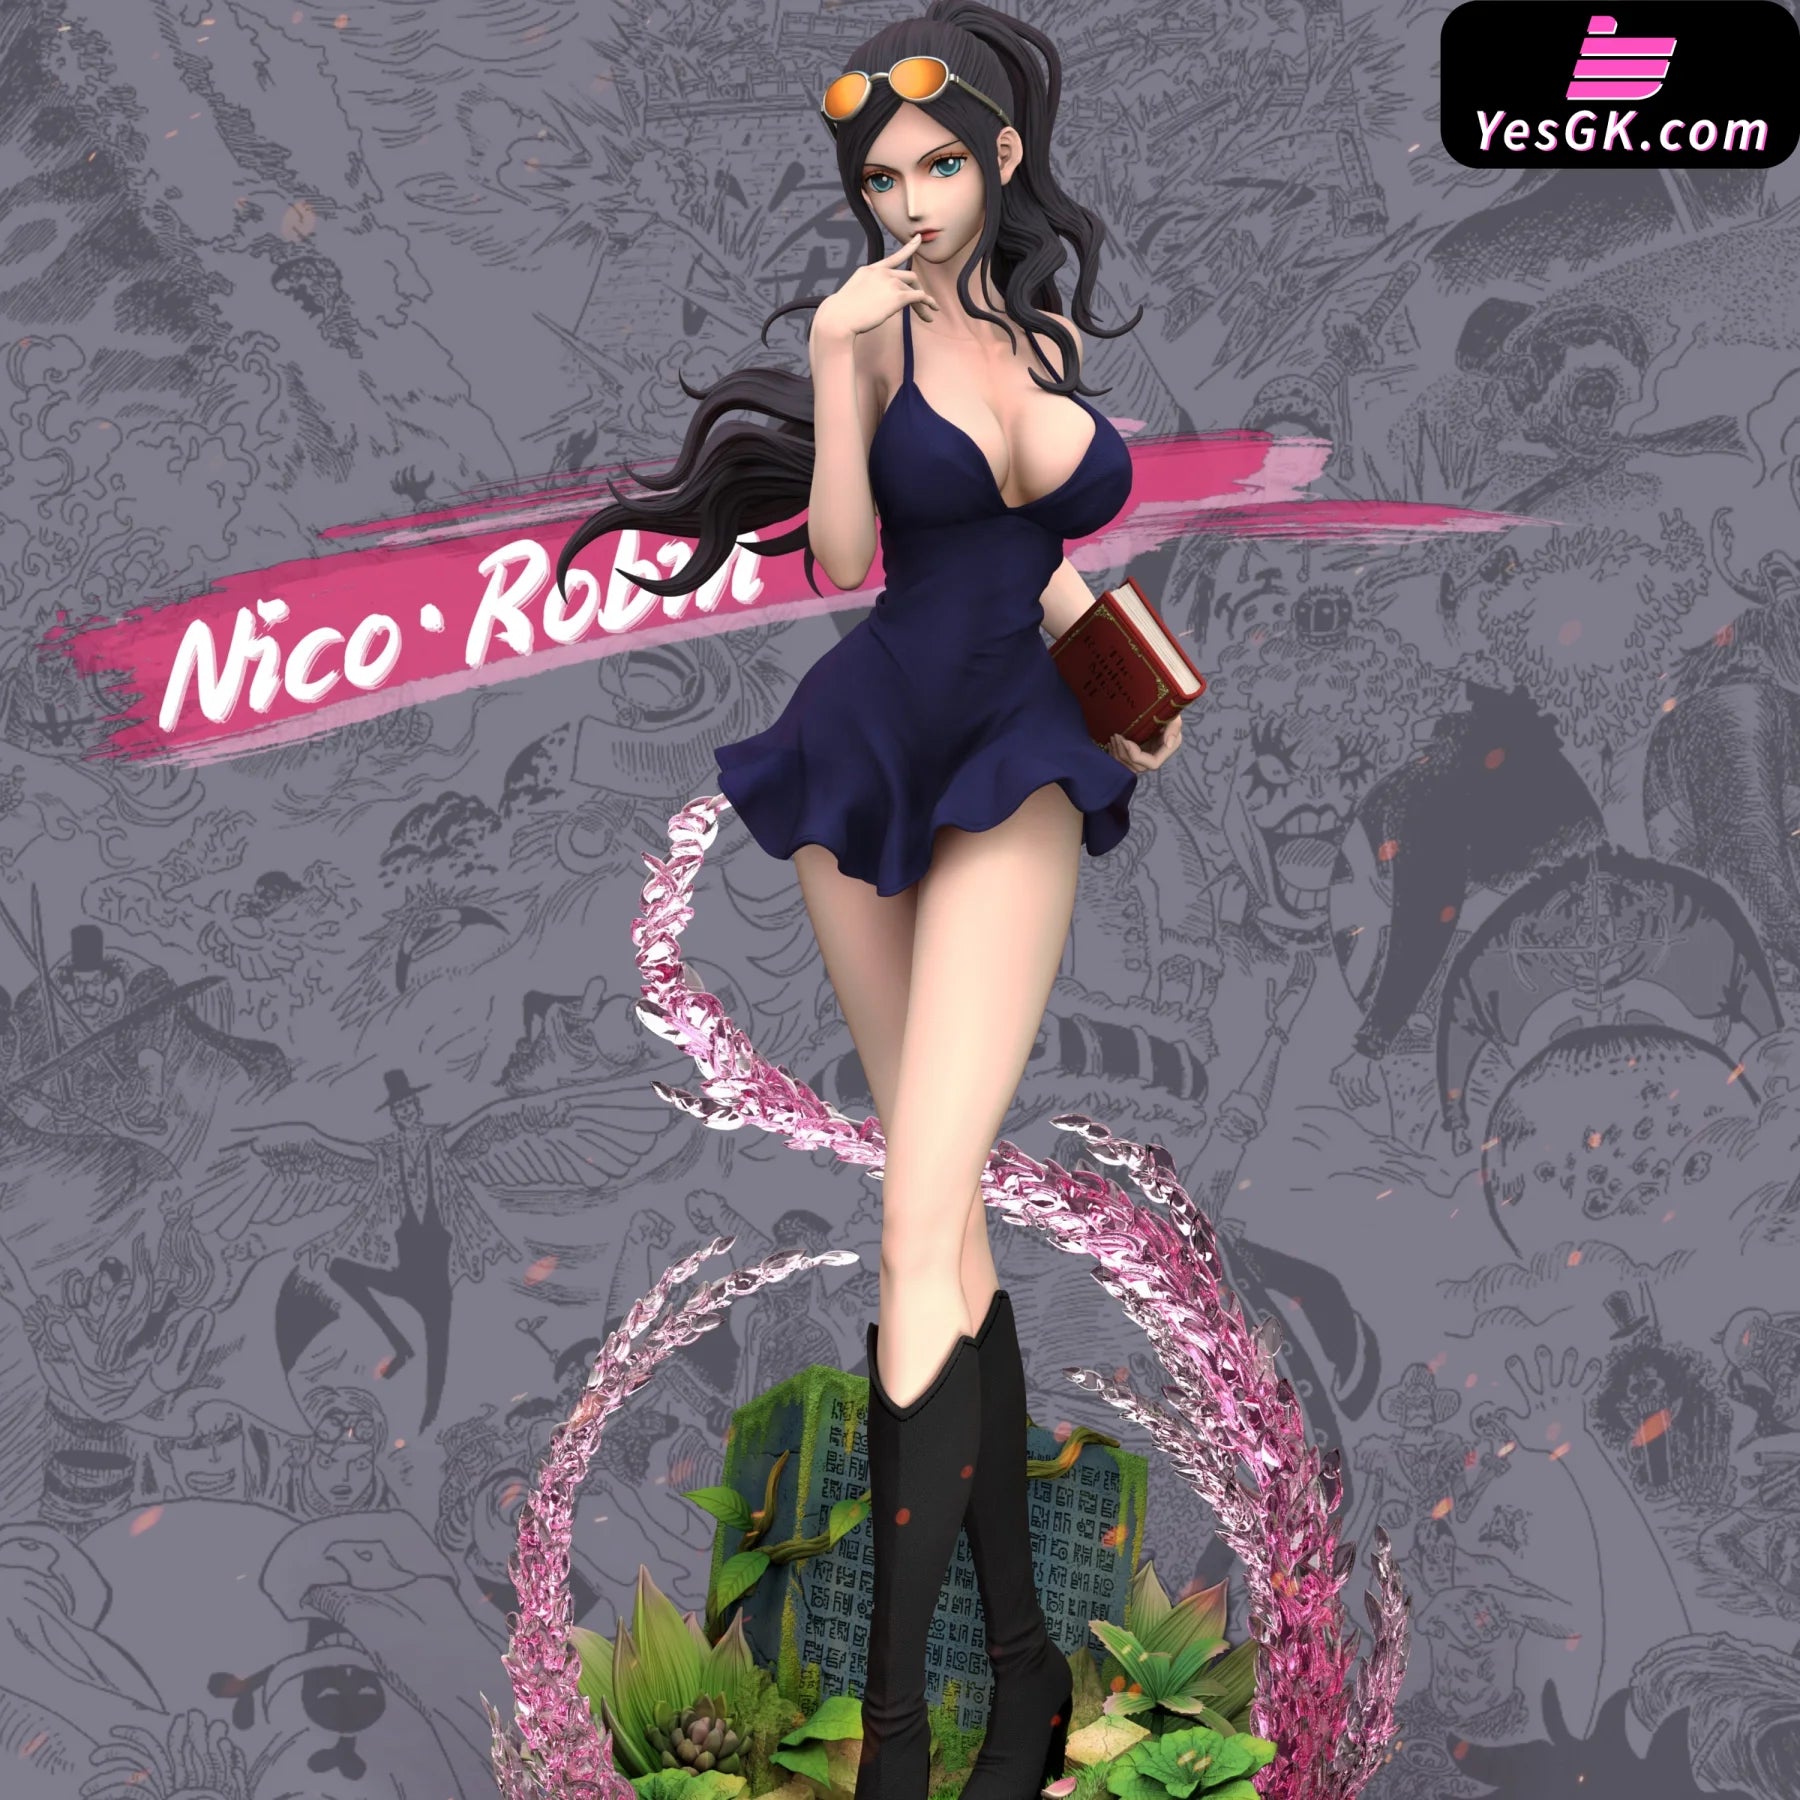 One Piece Nico Robin Statue - Hunter Fan Studio [Pre-Order]